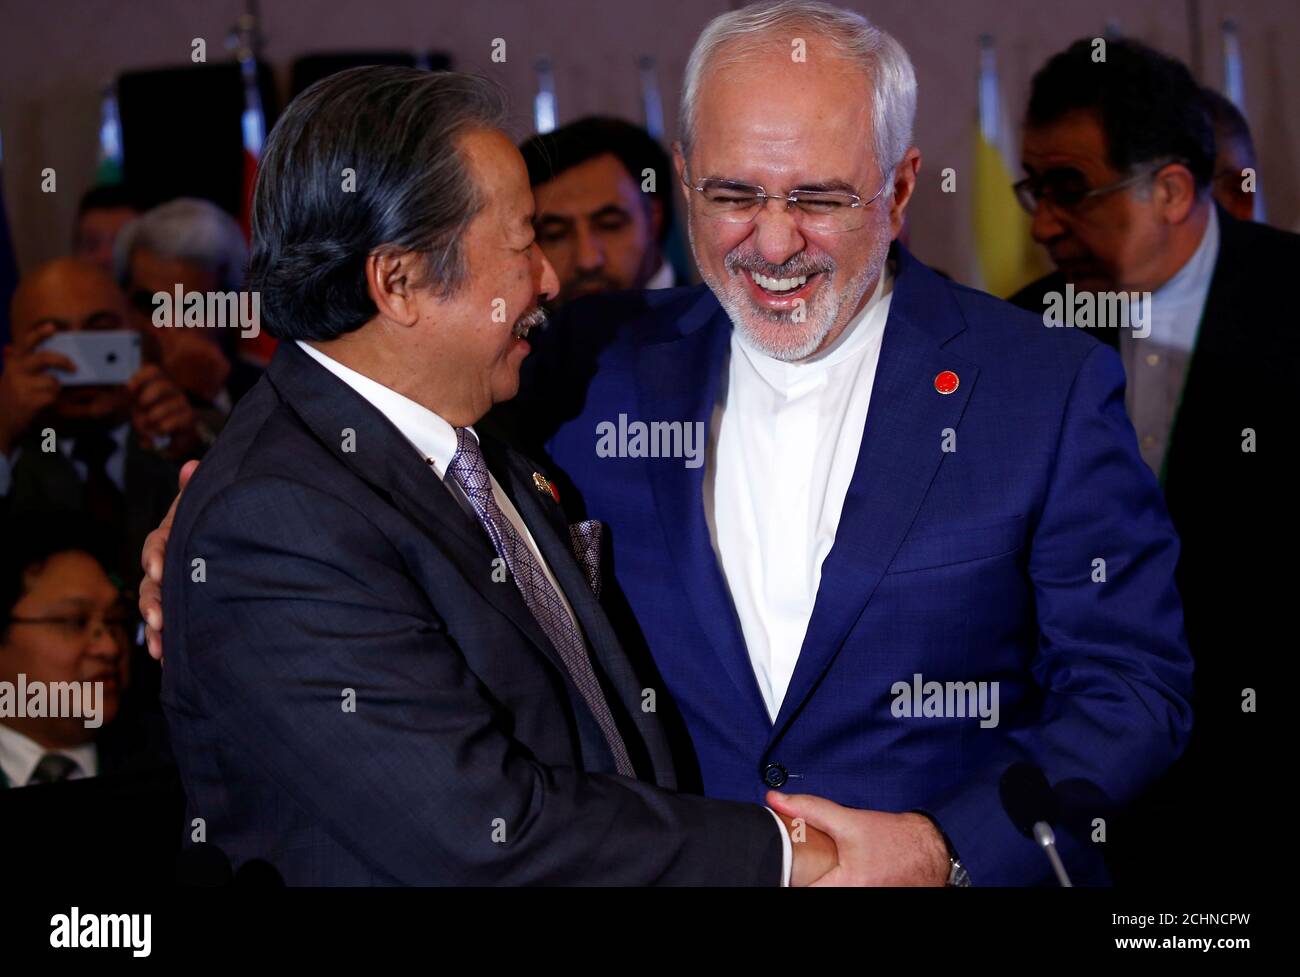 El Ministro de Relaciones Exteriores de Irán, Mohammad Javad Zarif, reacciona con su homólogo malasio dato Sri Anifah aman durante una reunión extraordinaria del Comité Ejecutivo de la OCI en Estambul, Turquía, el 1 de agosto de 2017. REUTERS/Murad Sezer Foto de stock